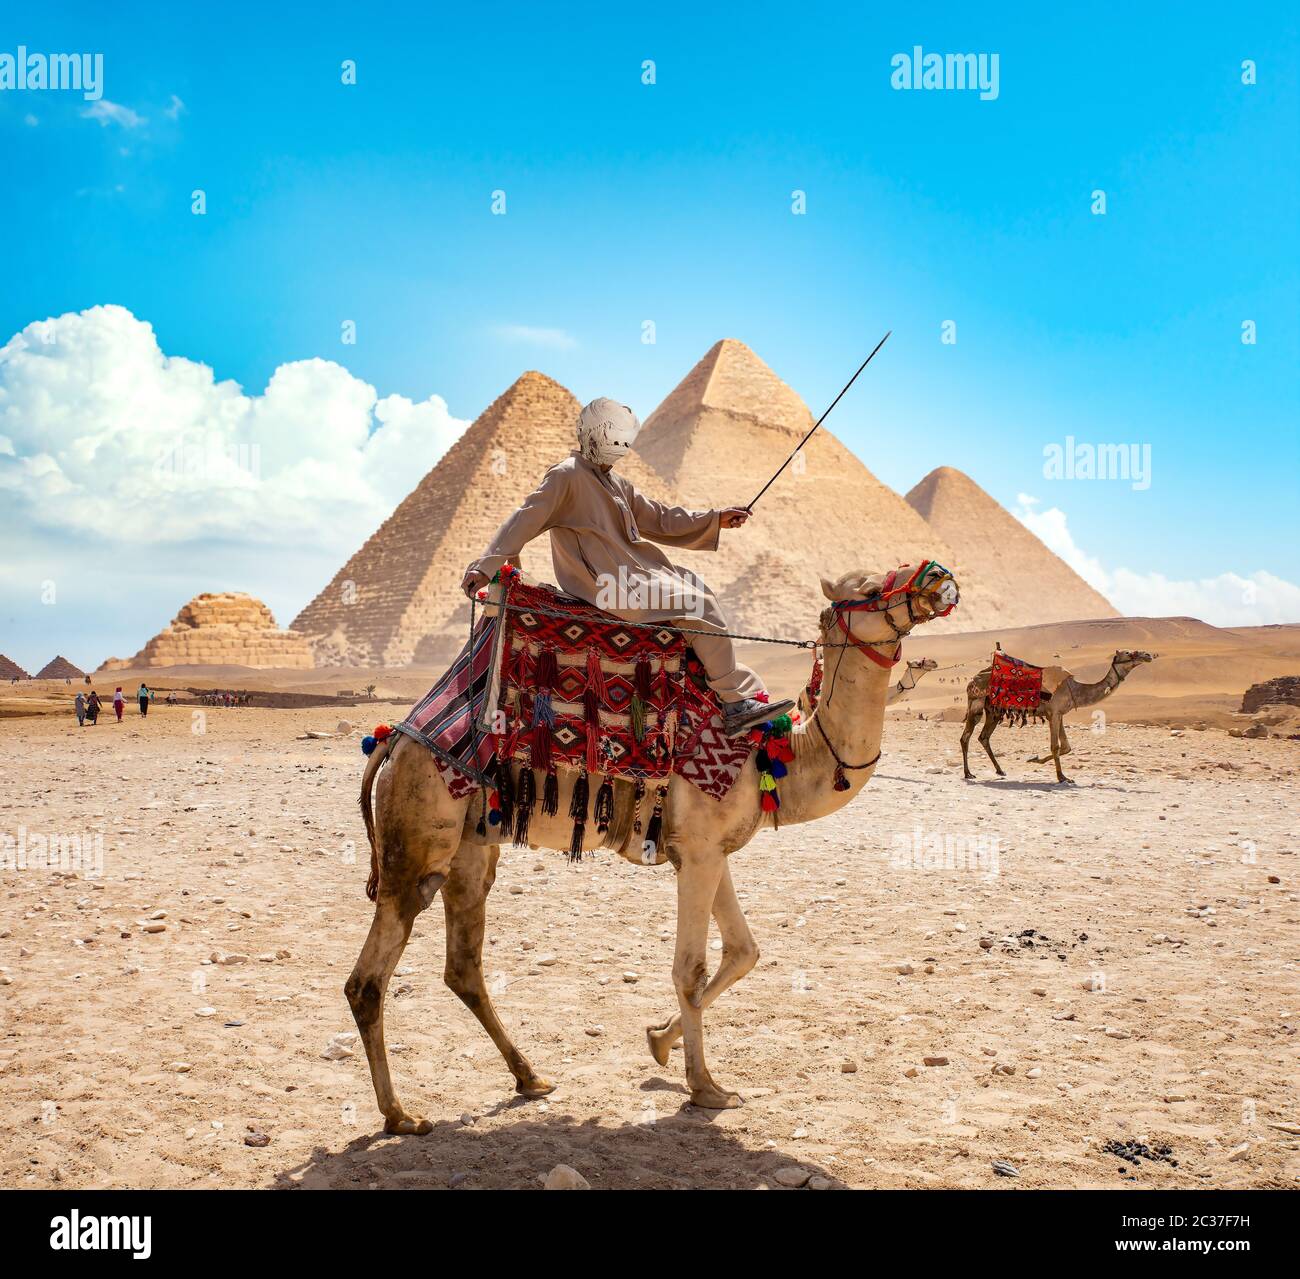 Sur les bédouins du désert en chameau près de pyramides Banque D'Images